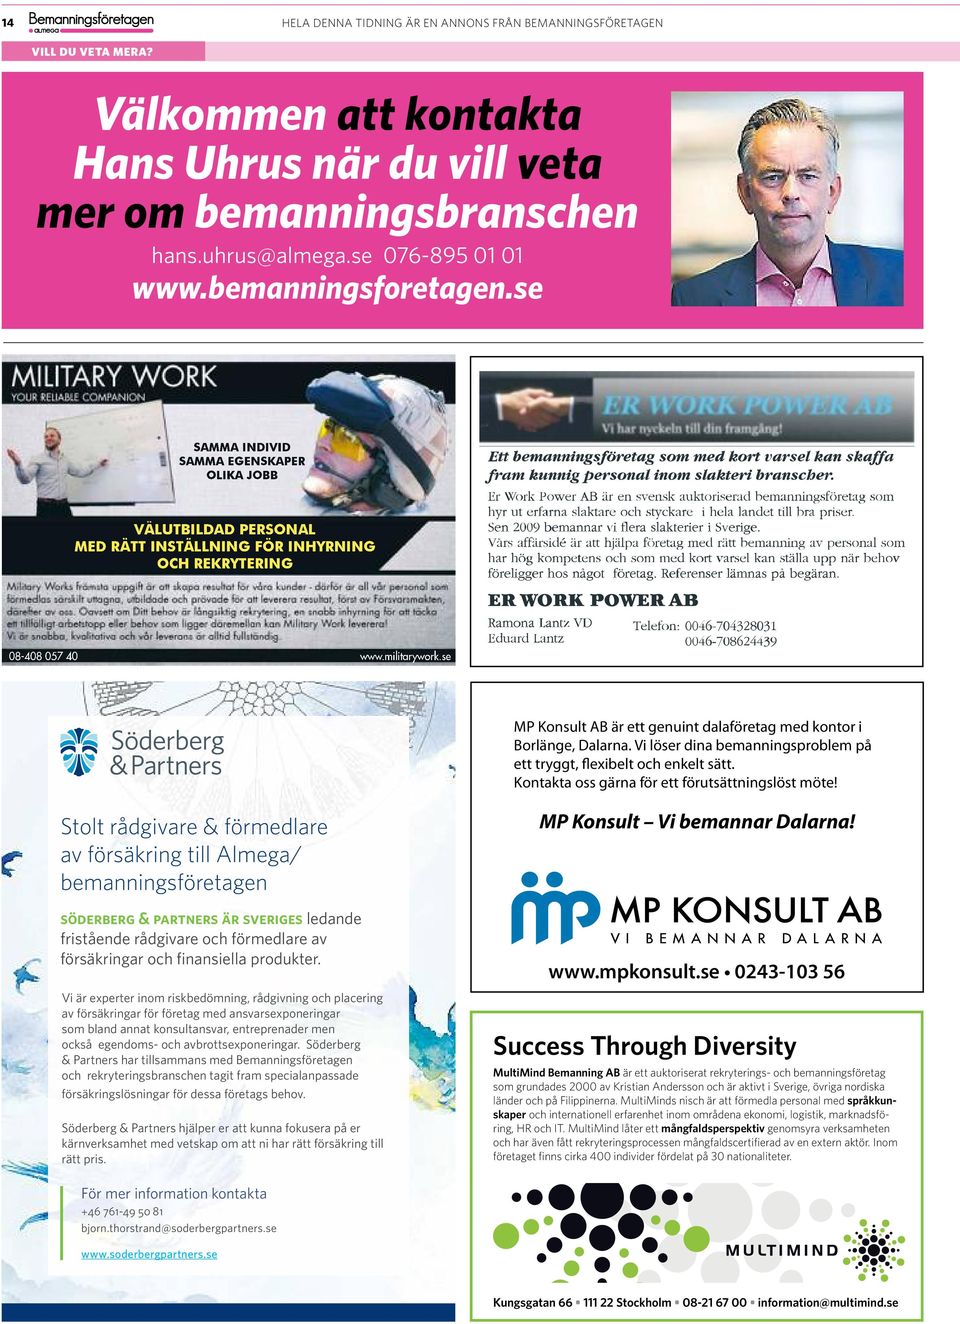 se MP Konsult AB är ett genuint dalaföretag med kontor i Borlänge, Dalarna. Vi löser dina bemanningsproblem på ett tryggt, flexibelt och enkelt sätt.